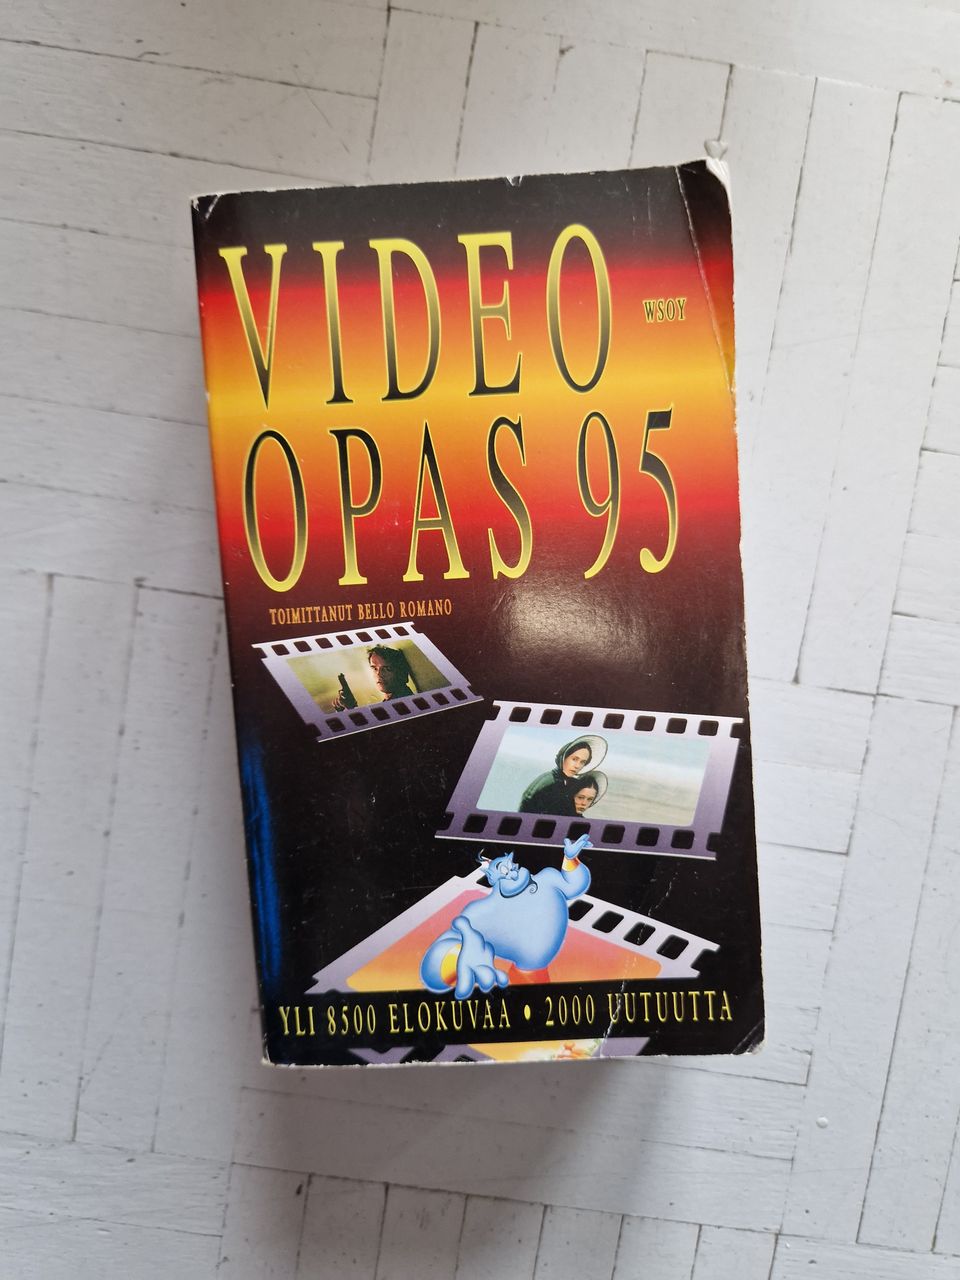 Video-opas 1995